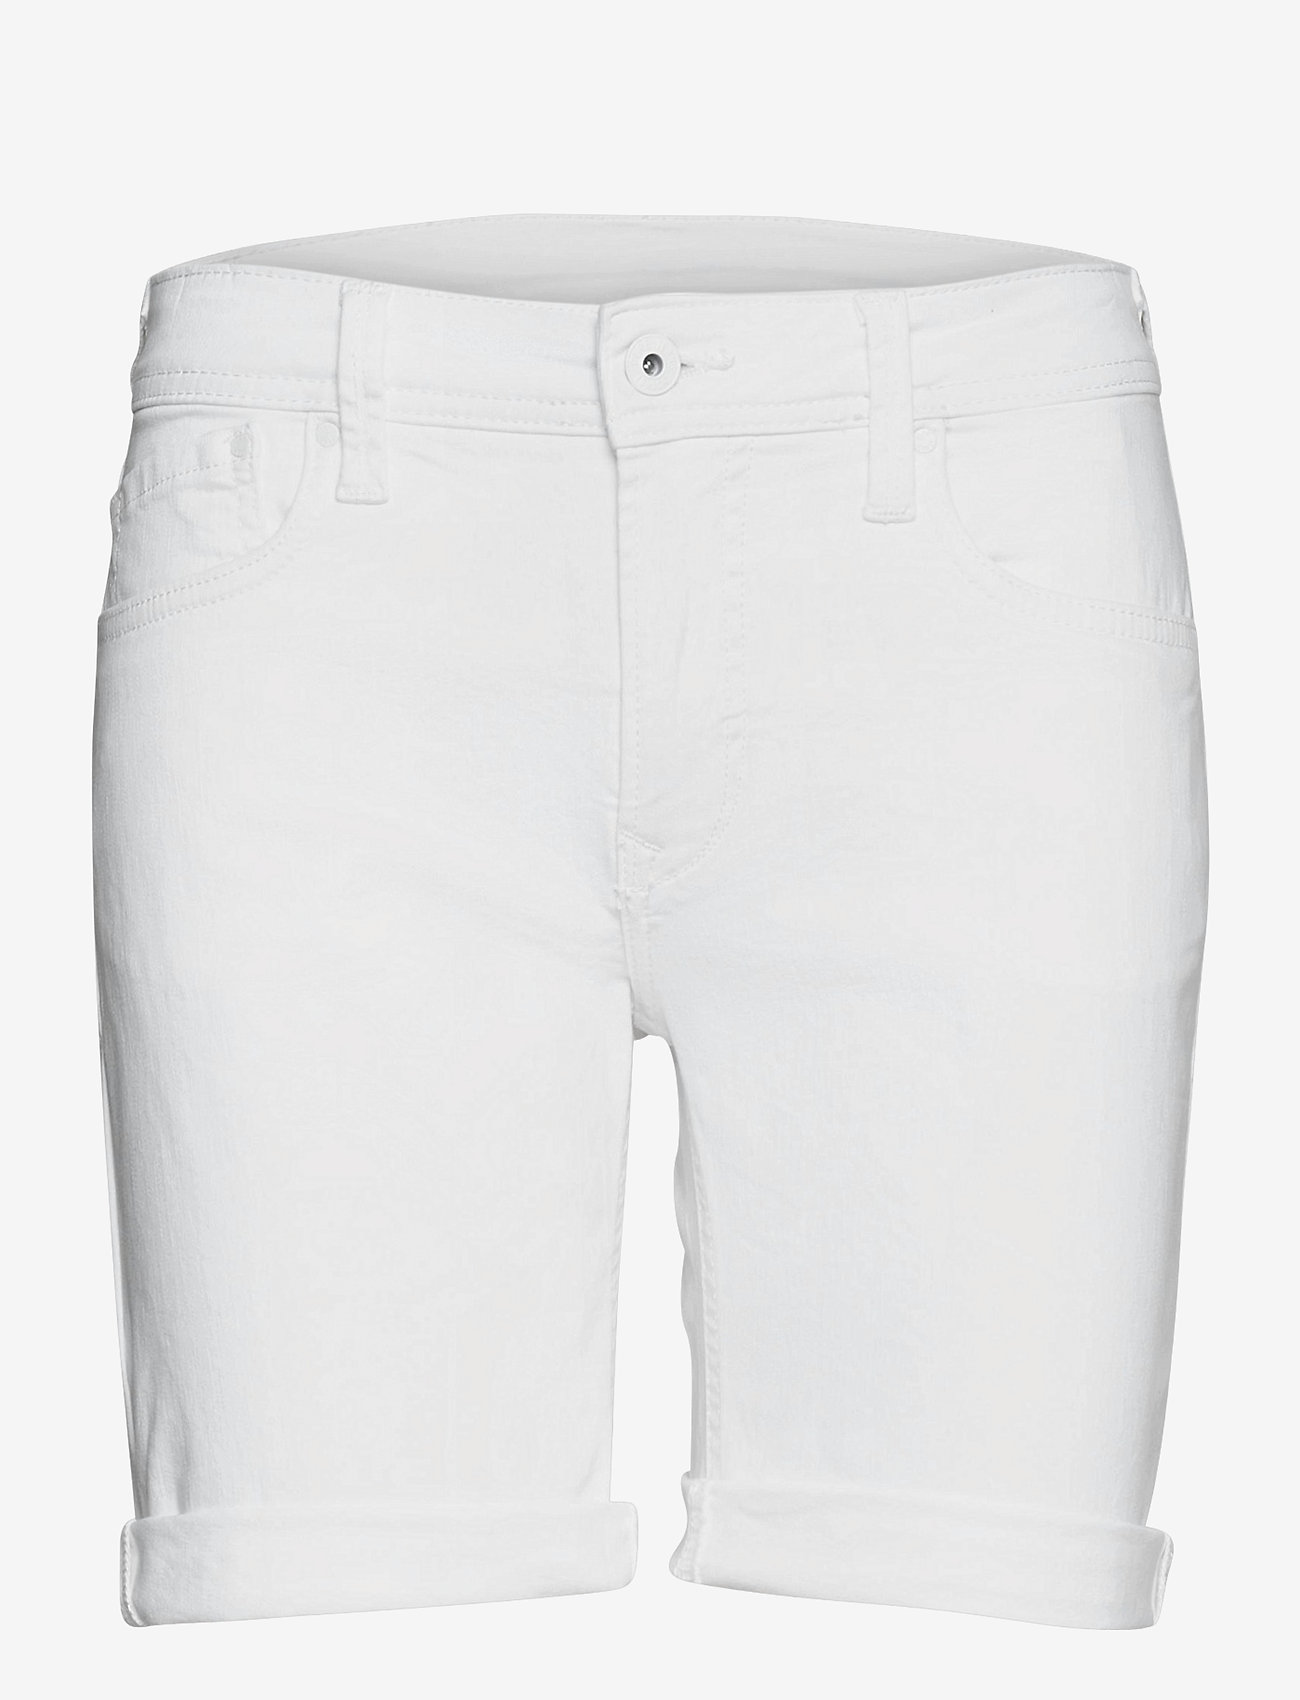 Pepe Jeans London - POPPY - denim shorts - denim - 0